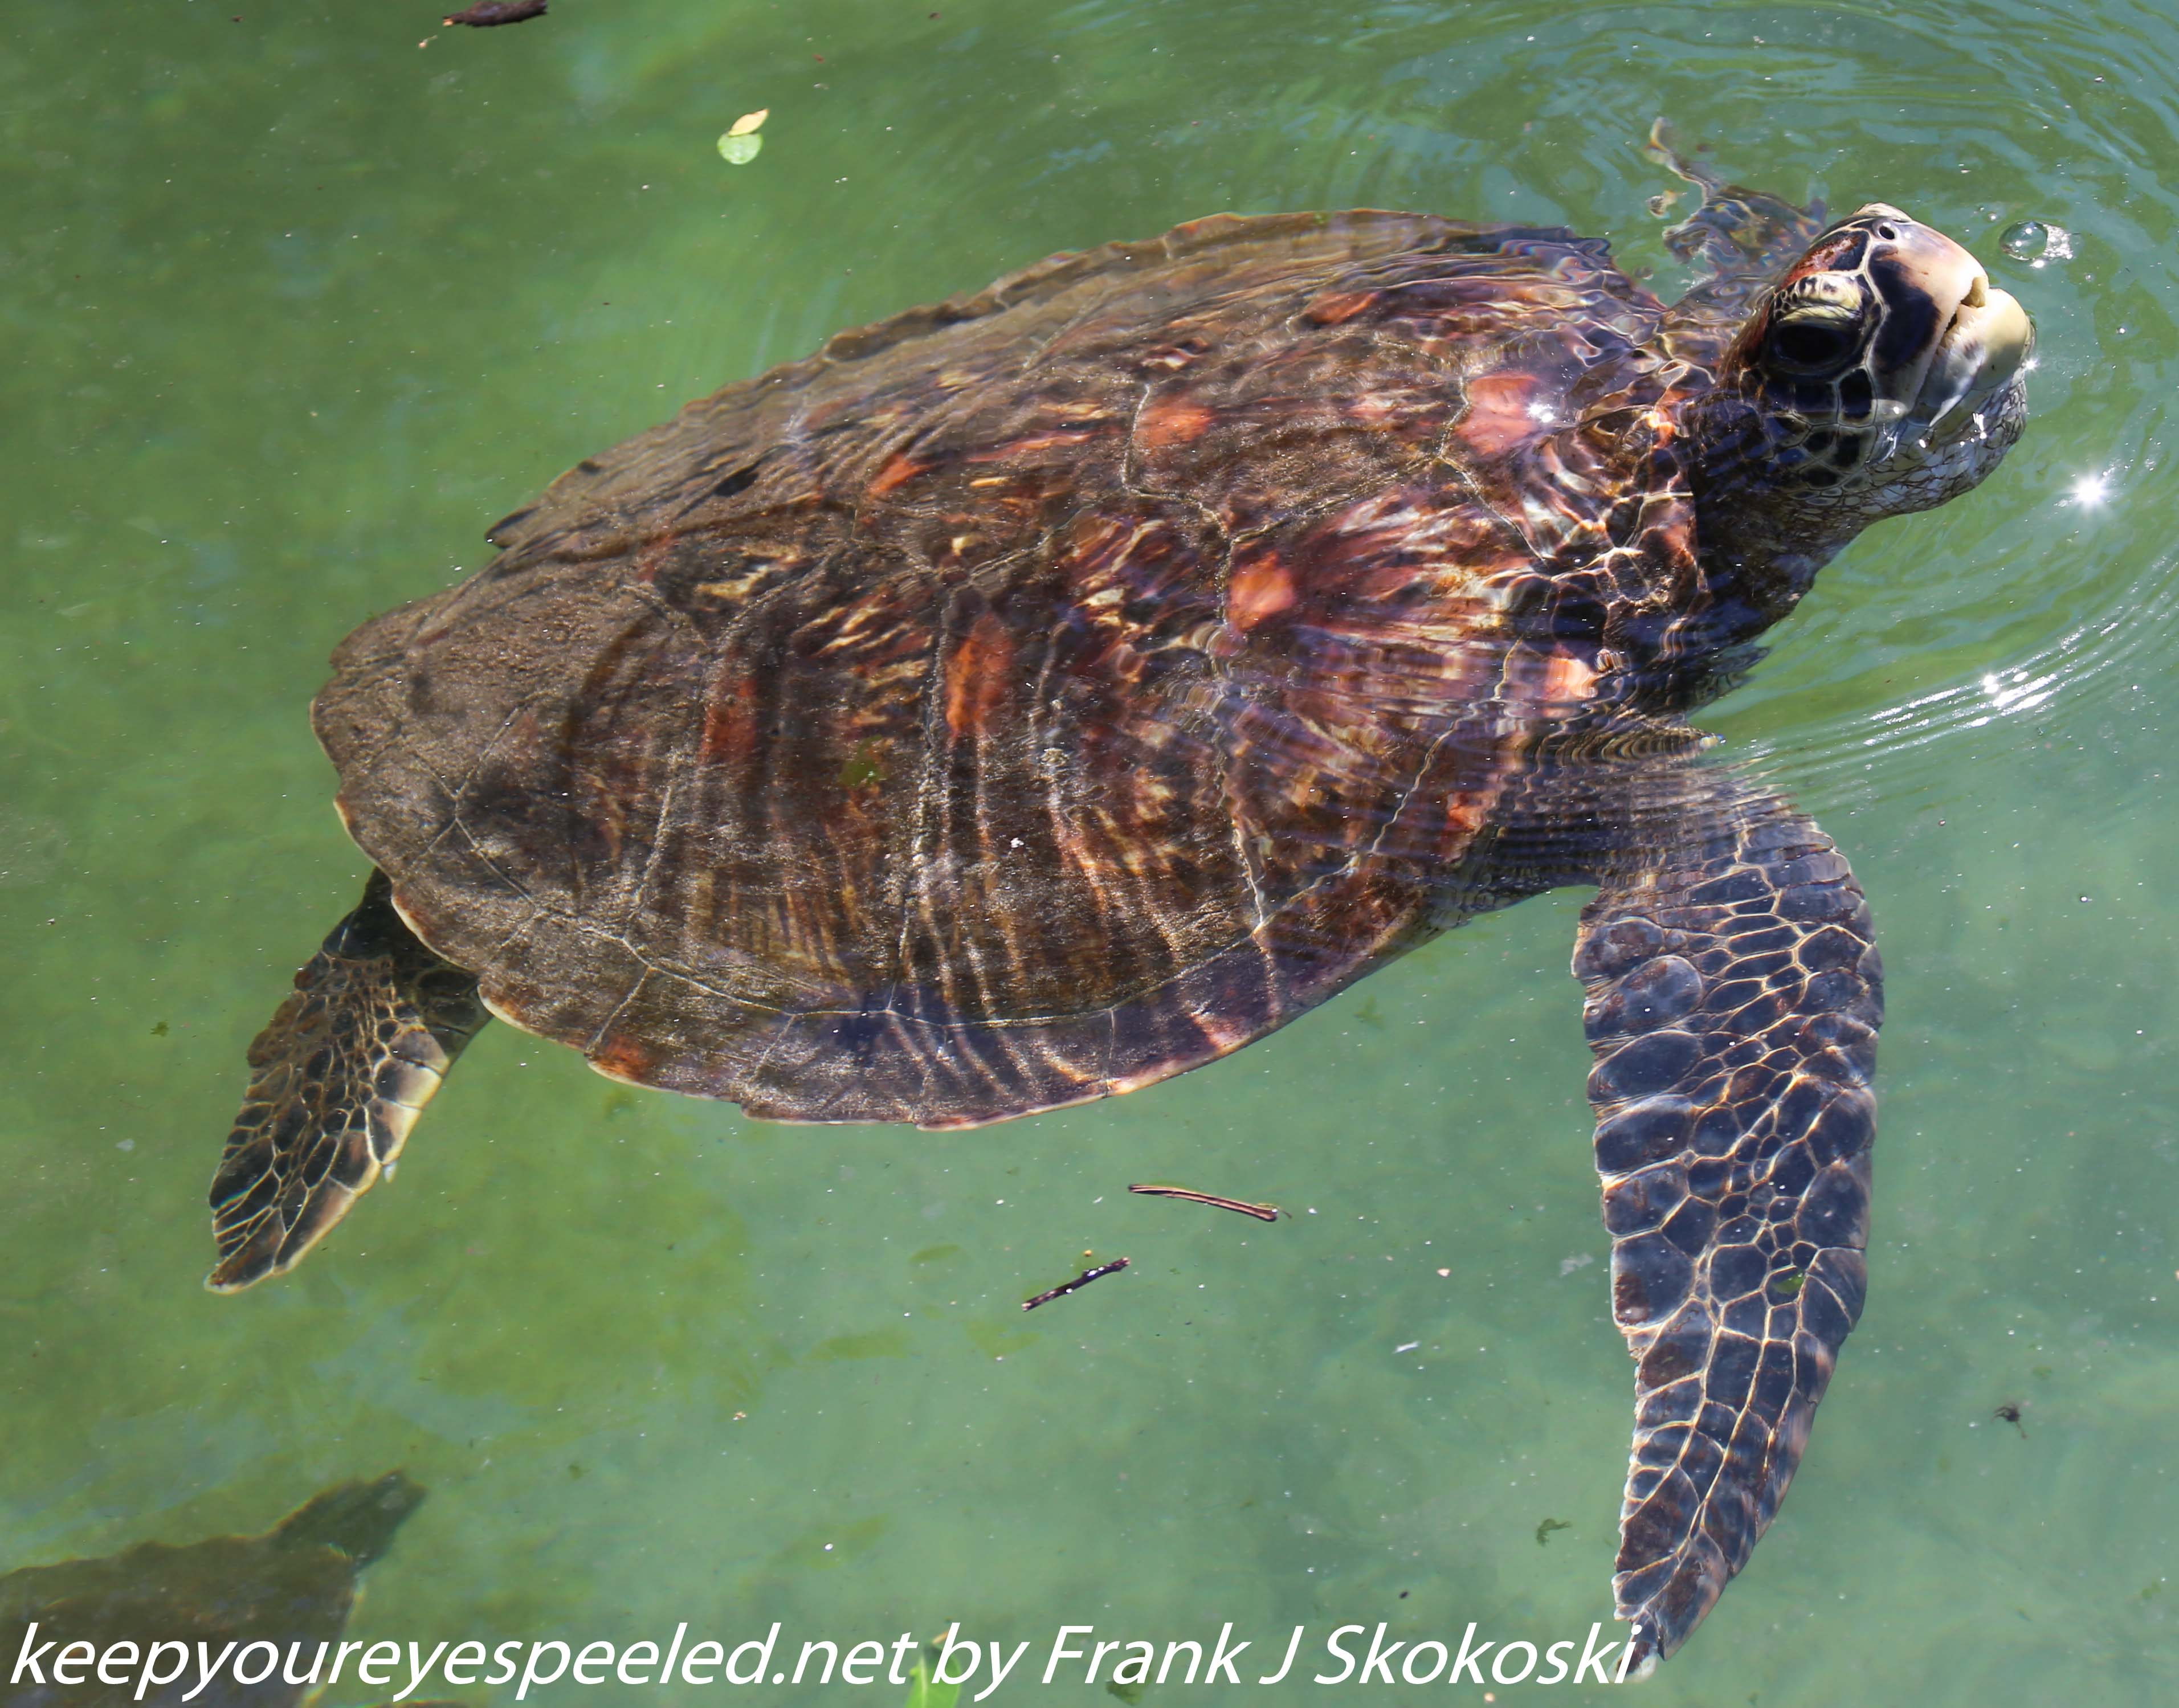 Tanzania-Day-Five-zanzibar-turtle-preserve-11-of-27